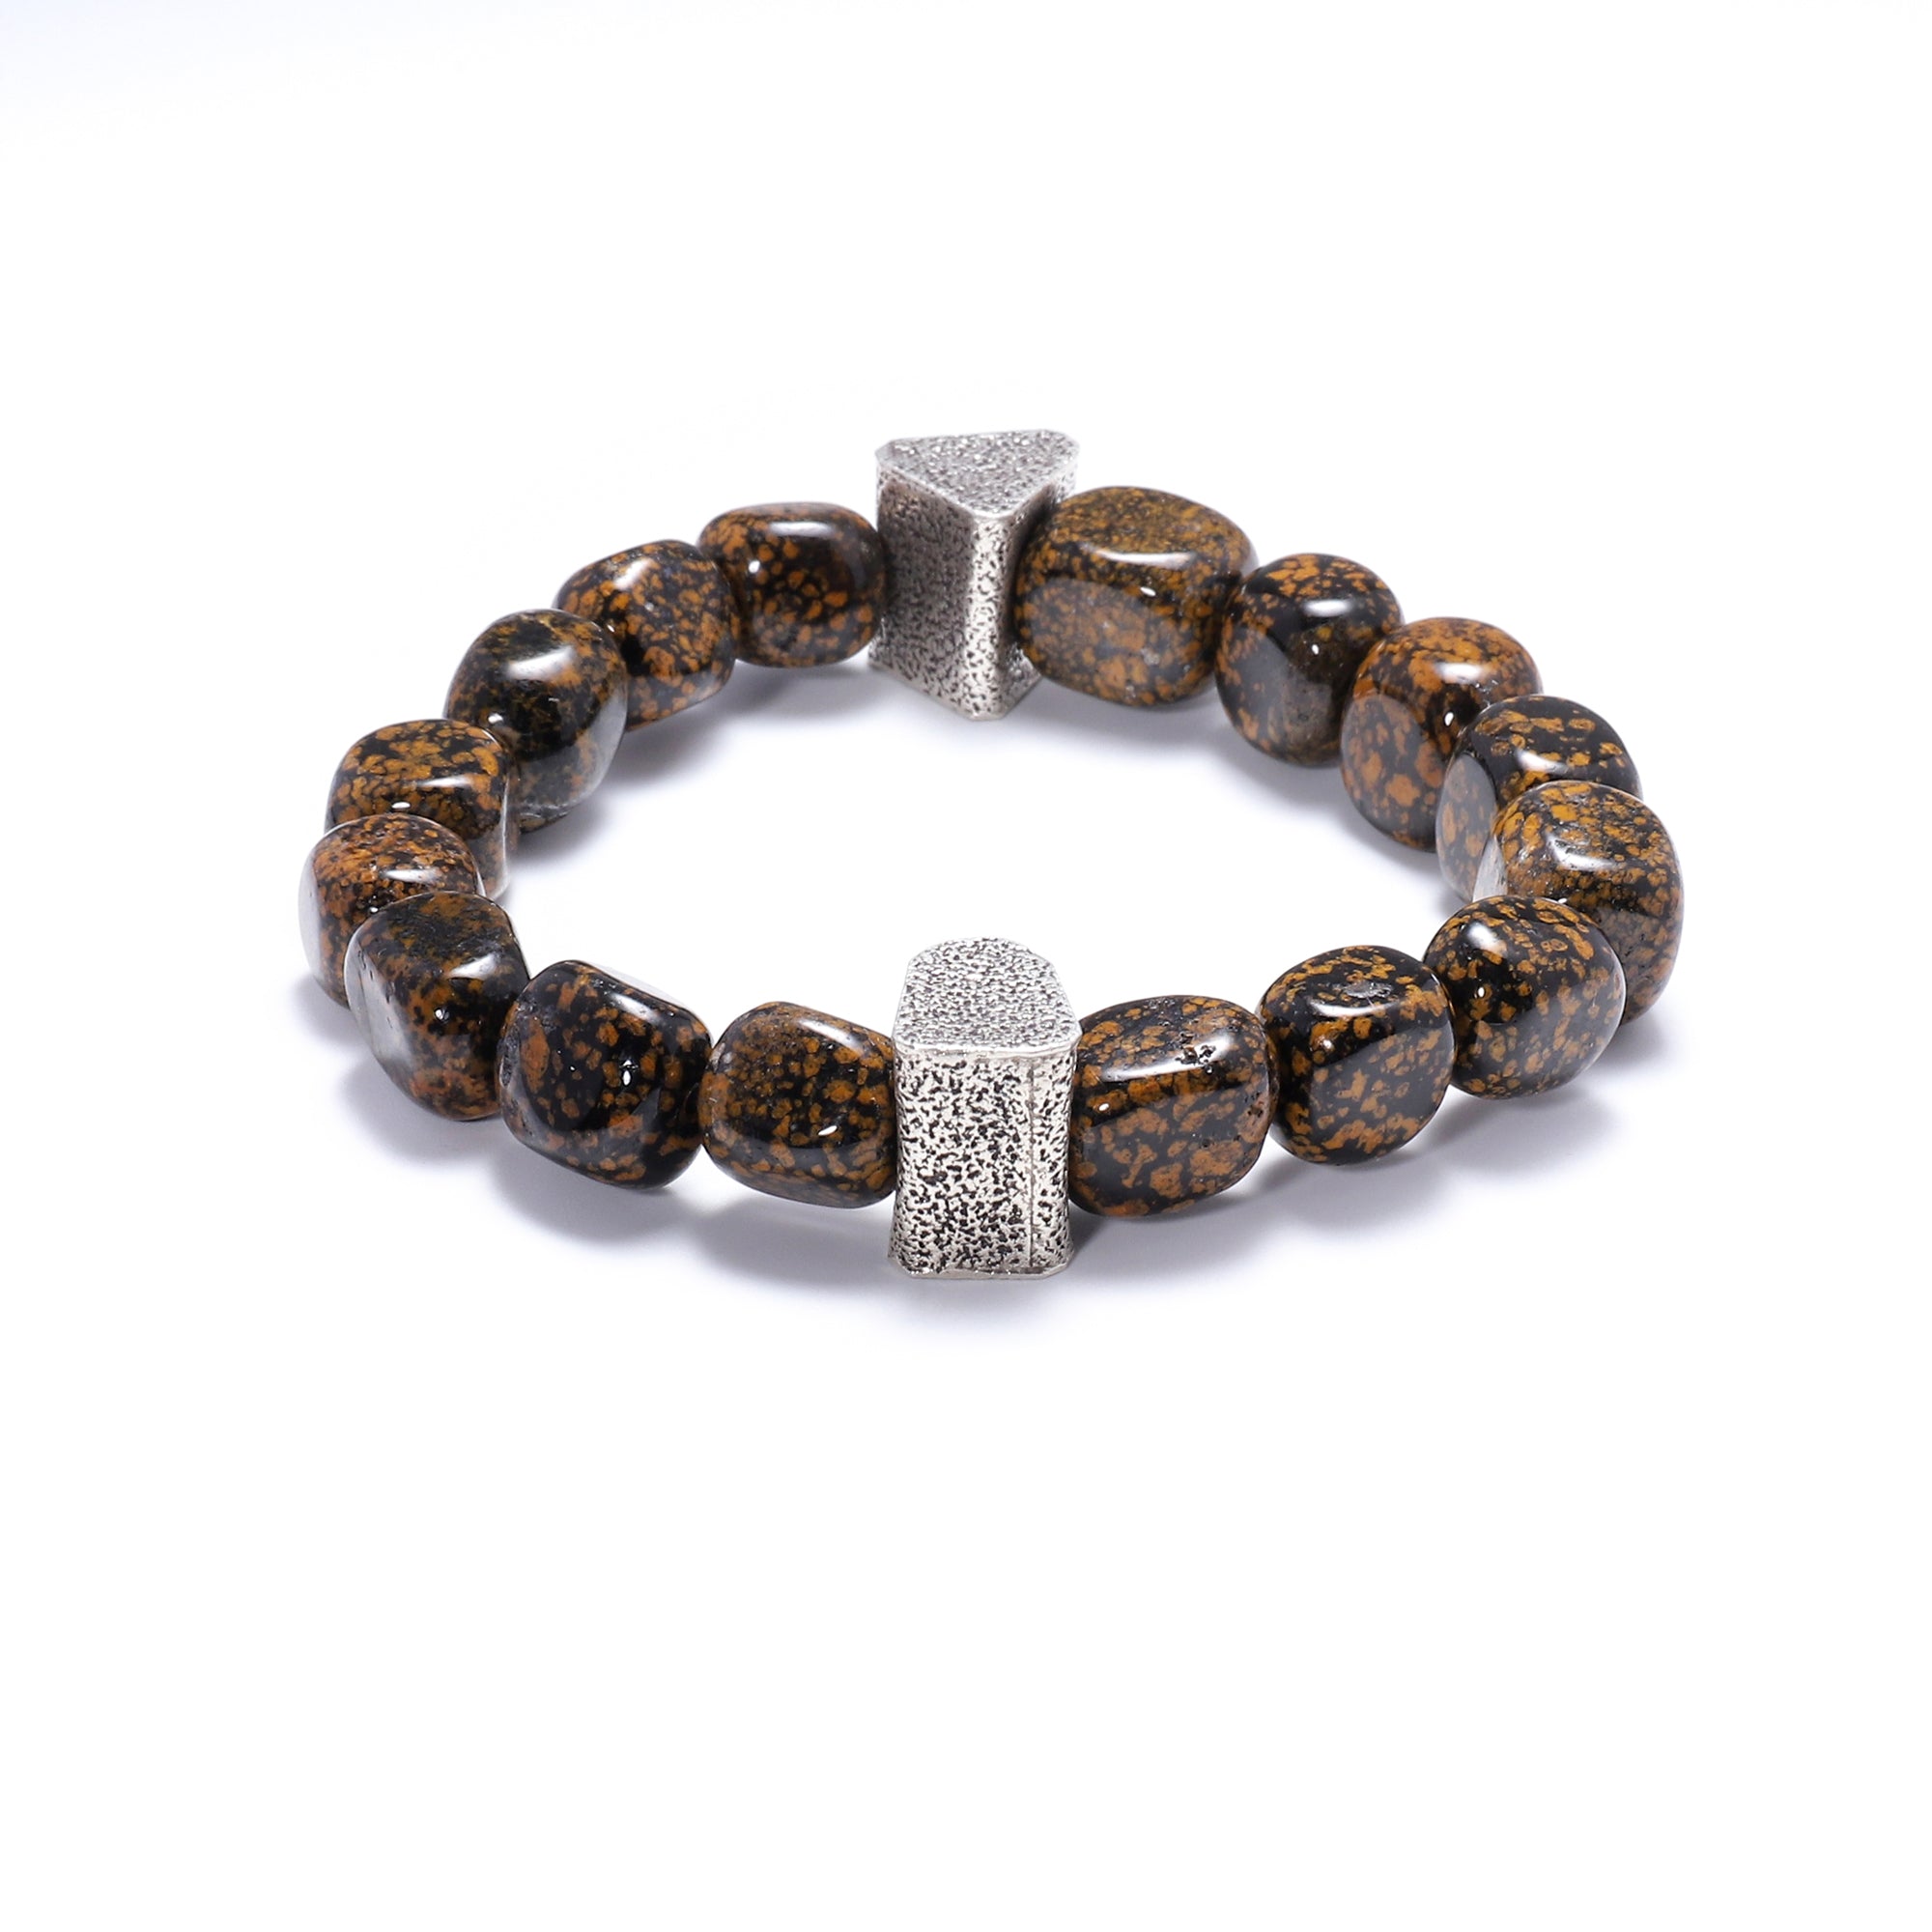 Natural Stone Bracelets for Men - 10mm Volcanic Stone